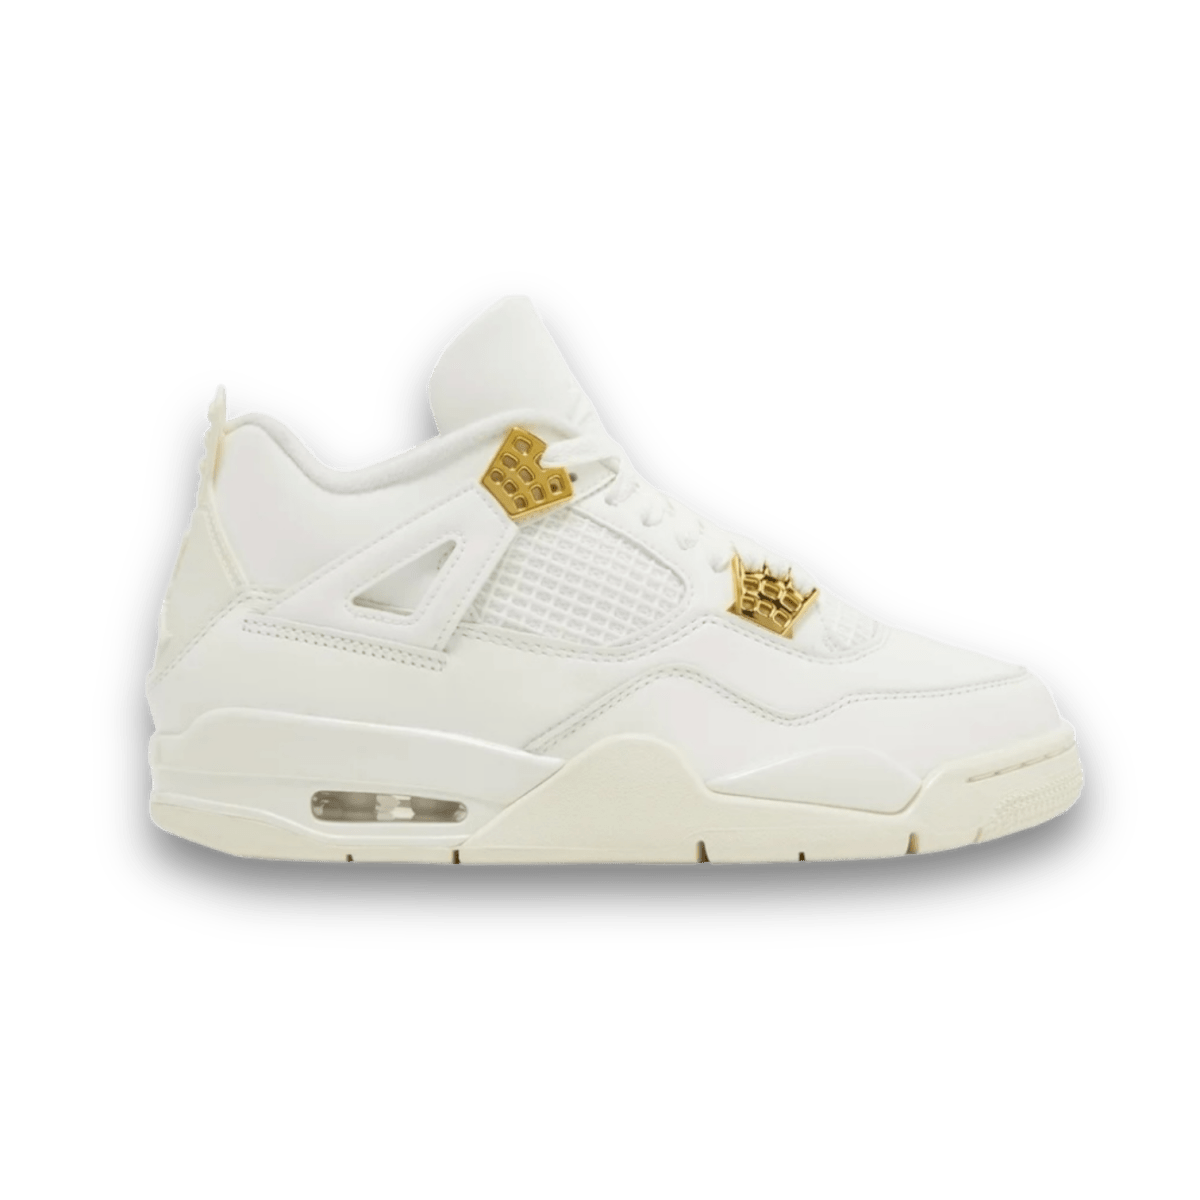 Air Jordan 4 Retro 'Metallic Gold' - Women - Mid Sneaker - Jawns on Fire Sneakers & Streetwear